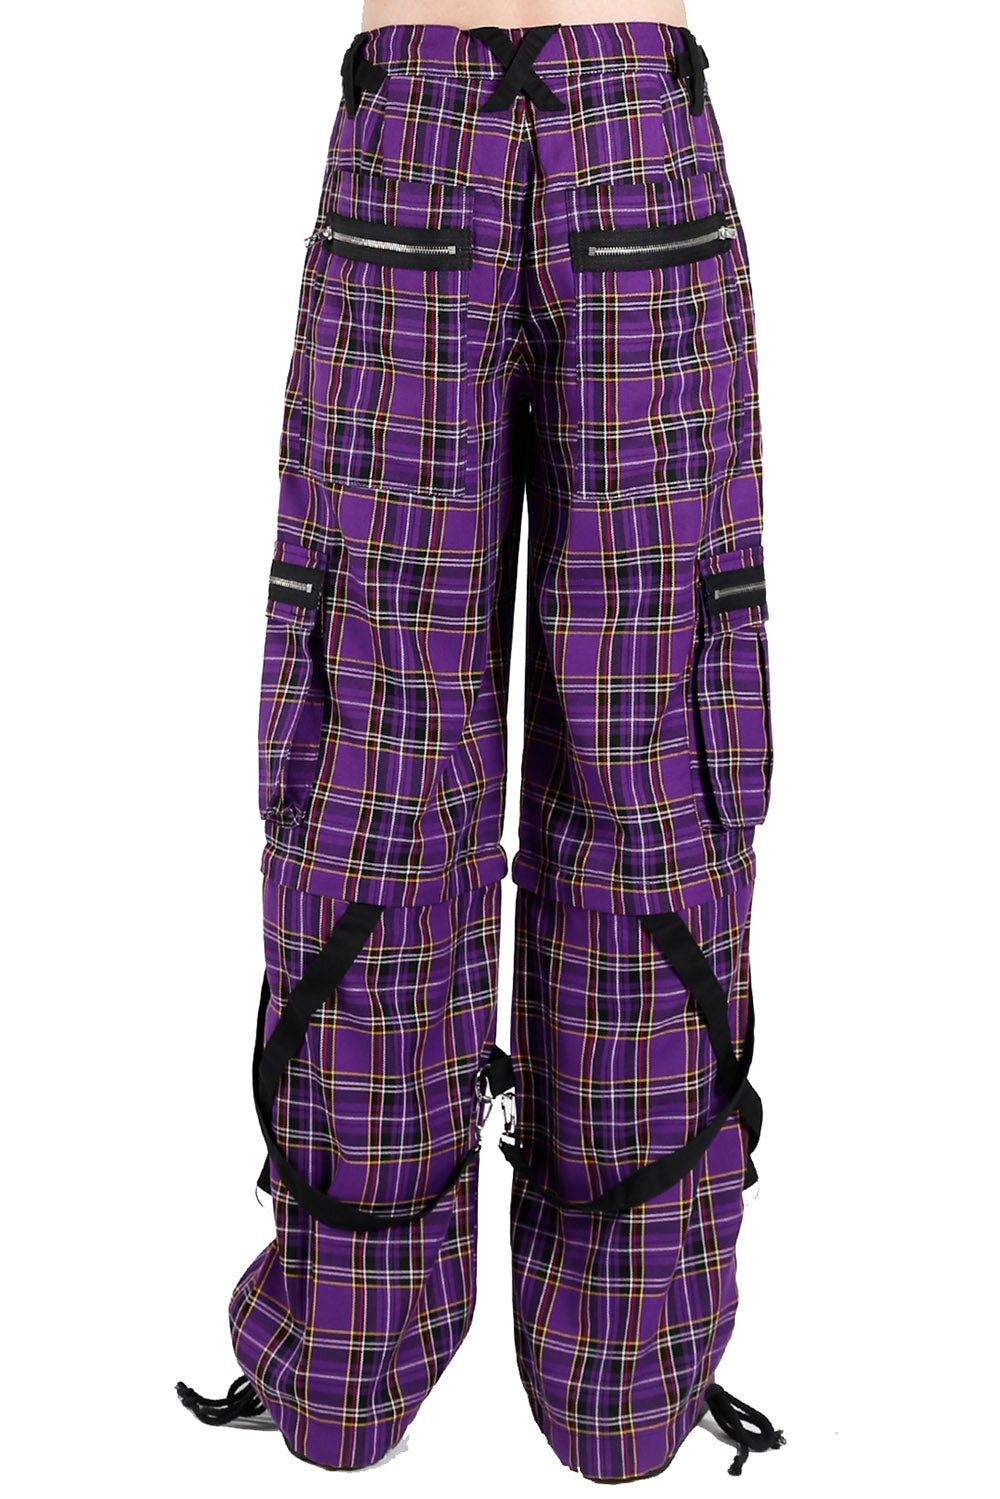 Tripp Strap Plaid Baggy Bondage Pants [Purple Plaid]